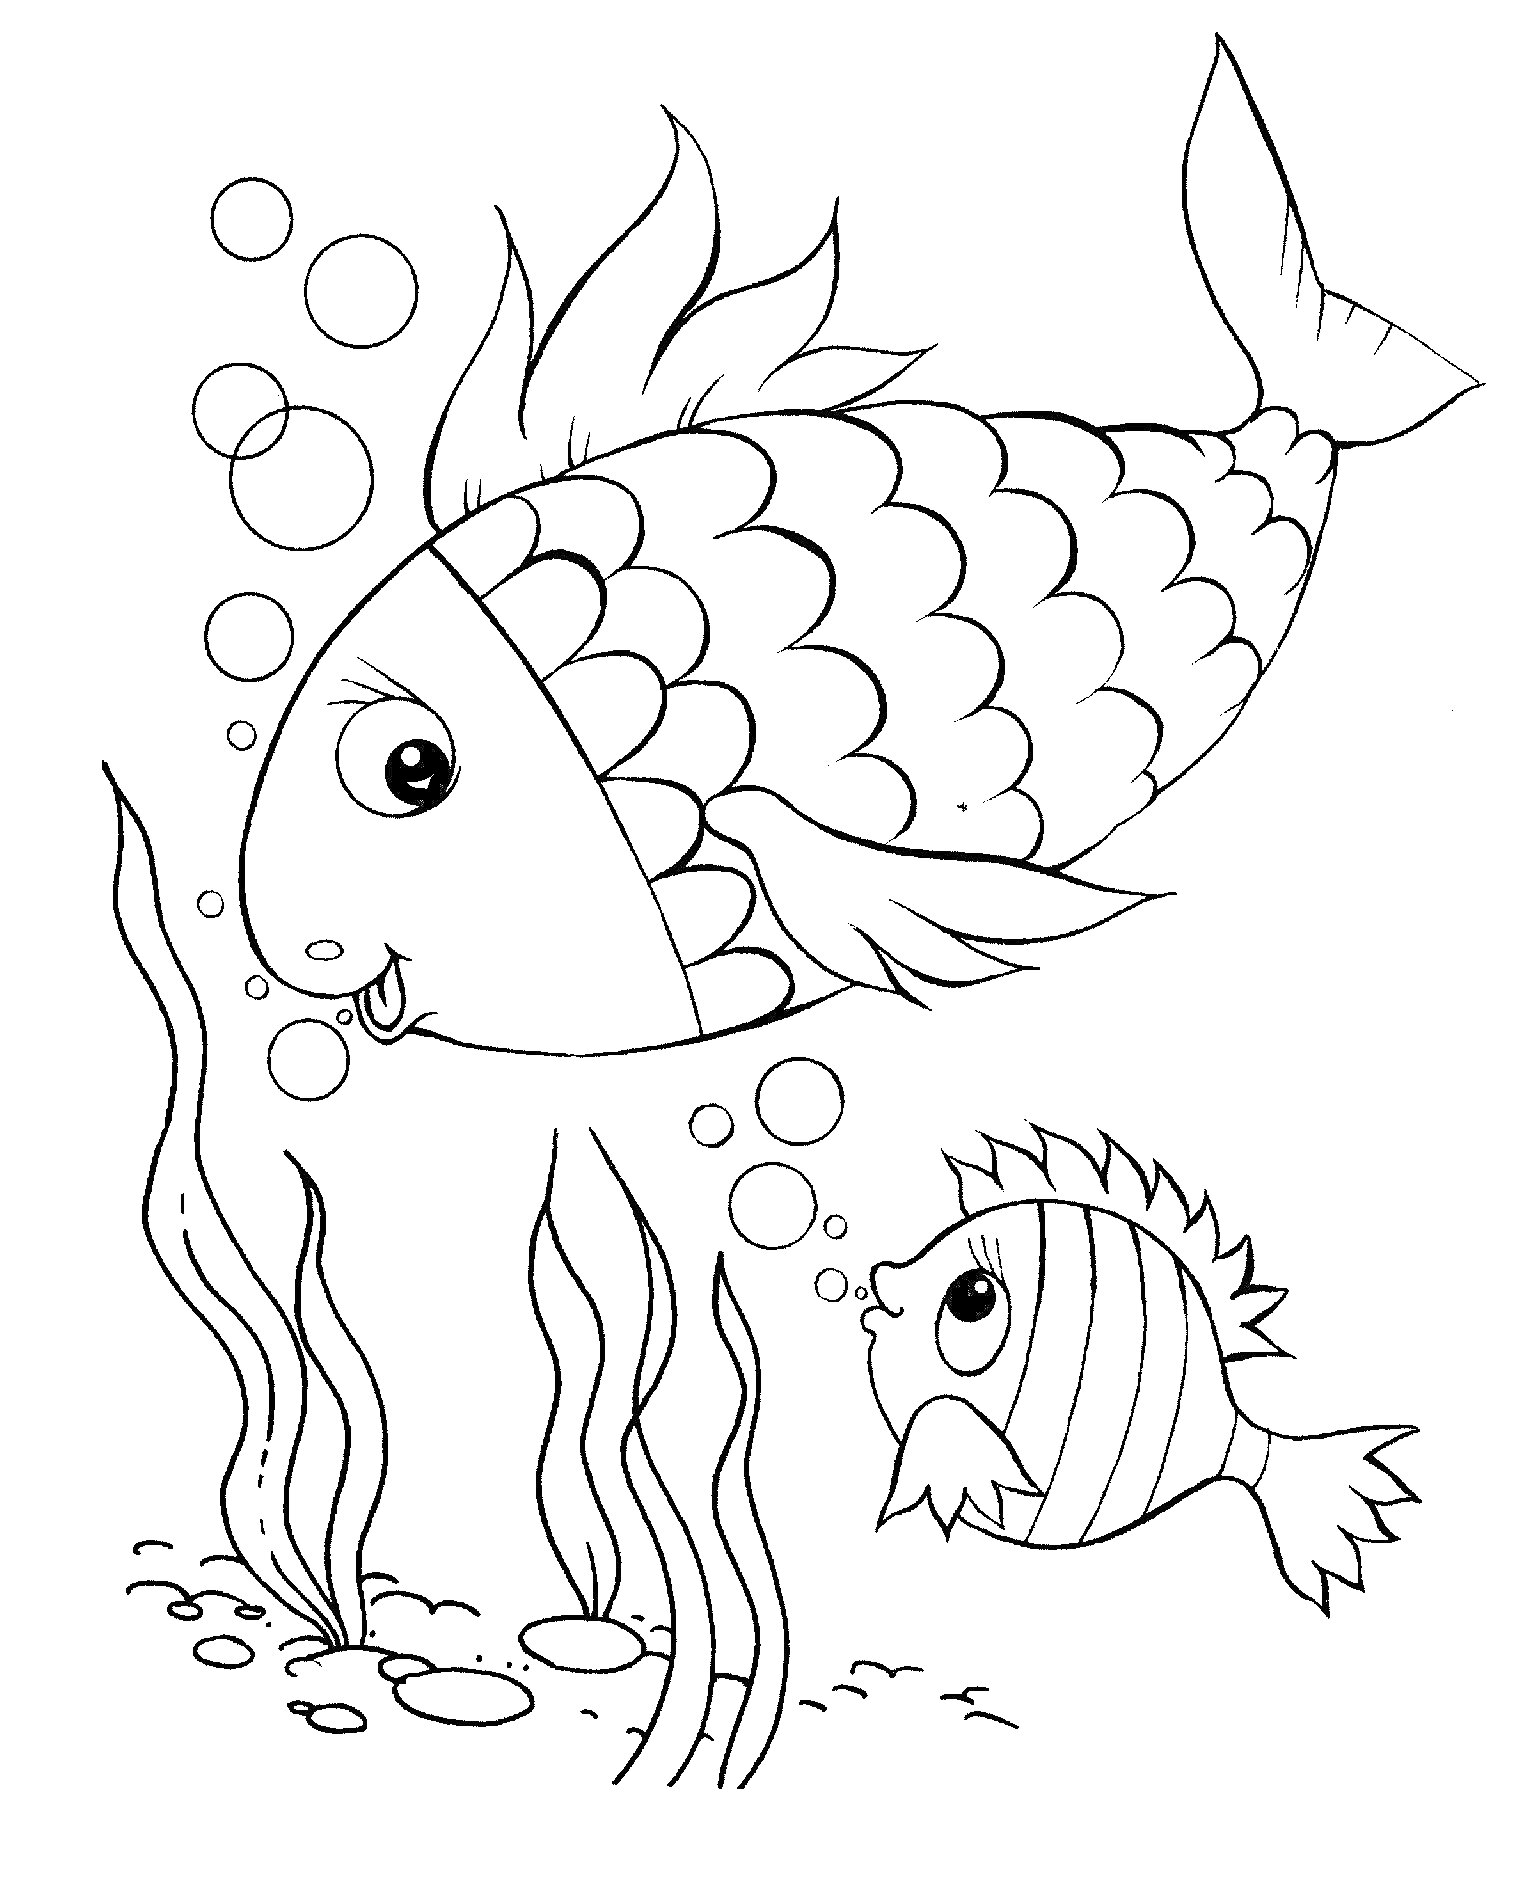 Раскраска Две рыбки в воде с пузырьками и водорослями